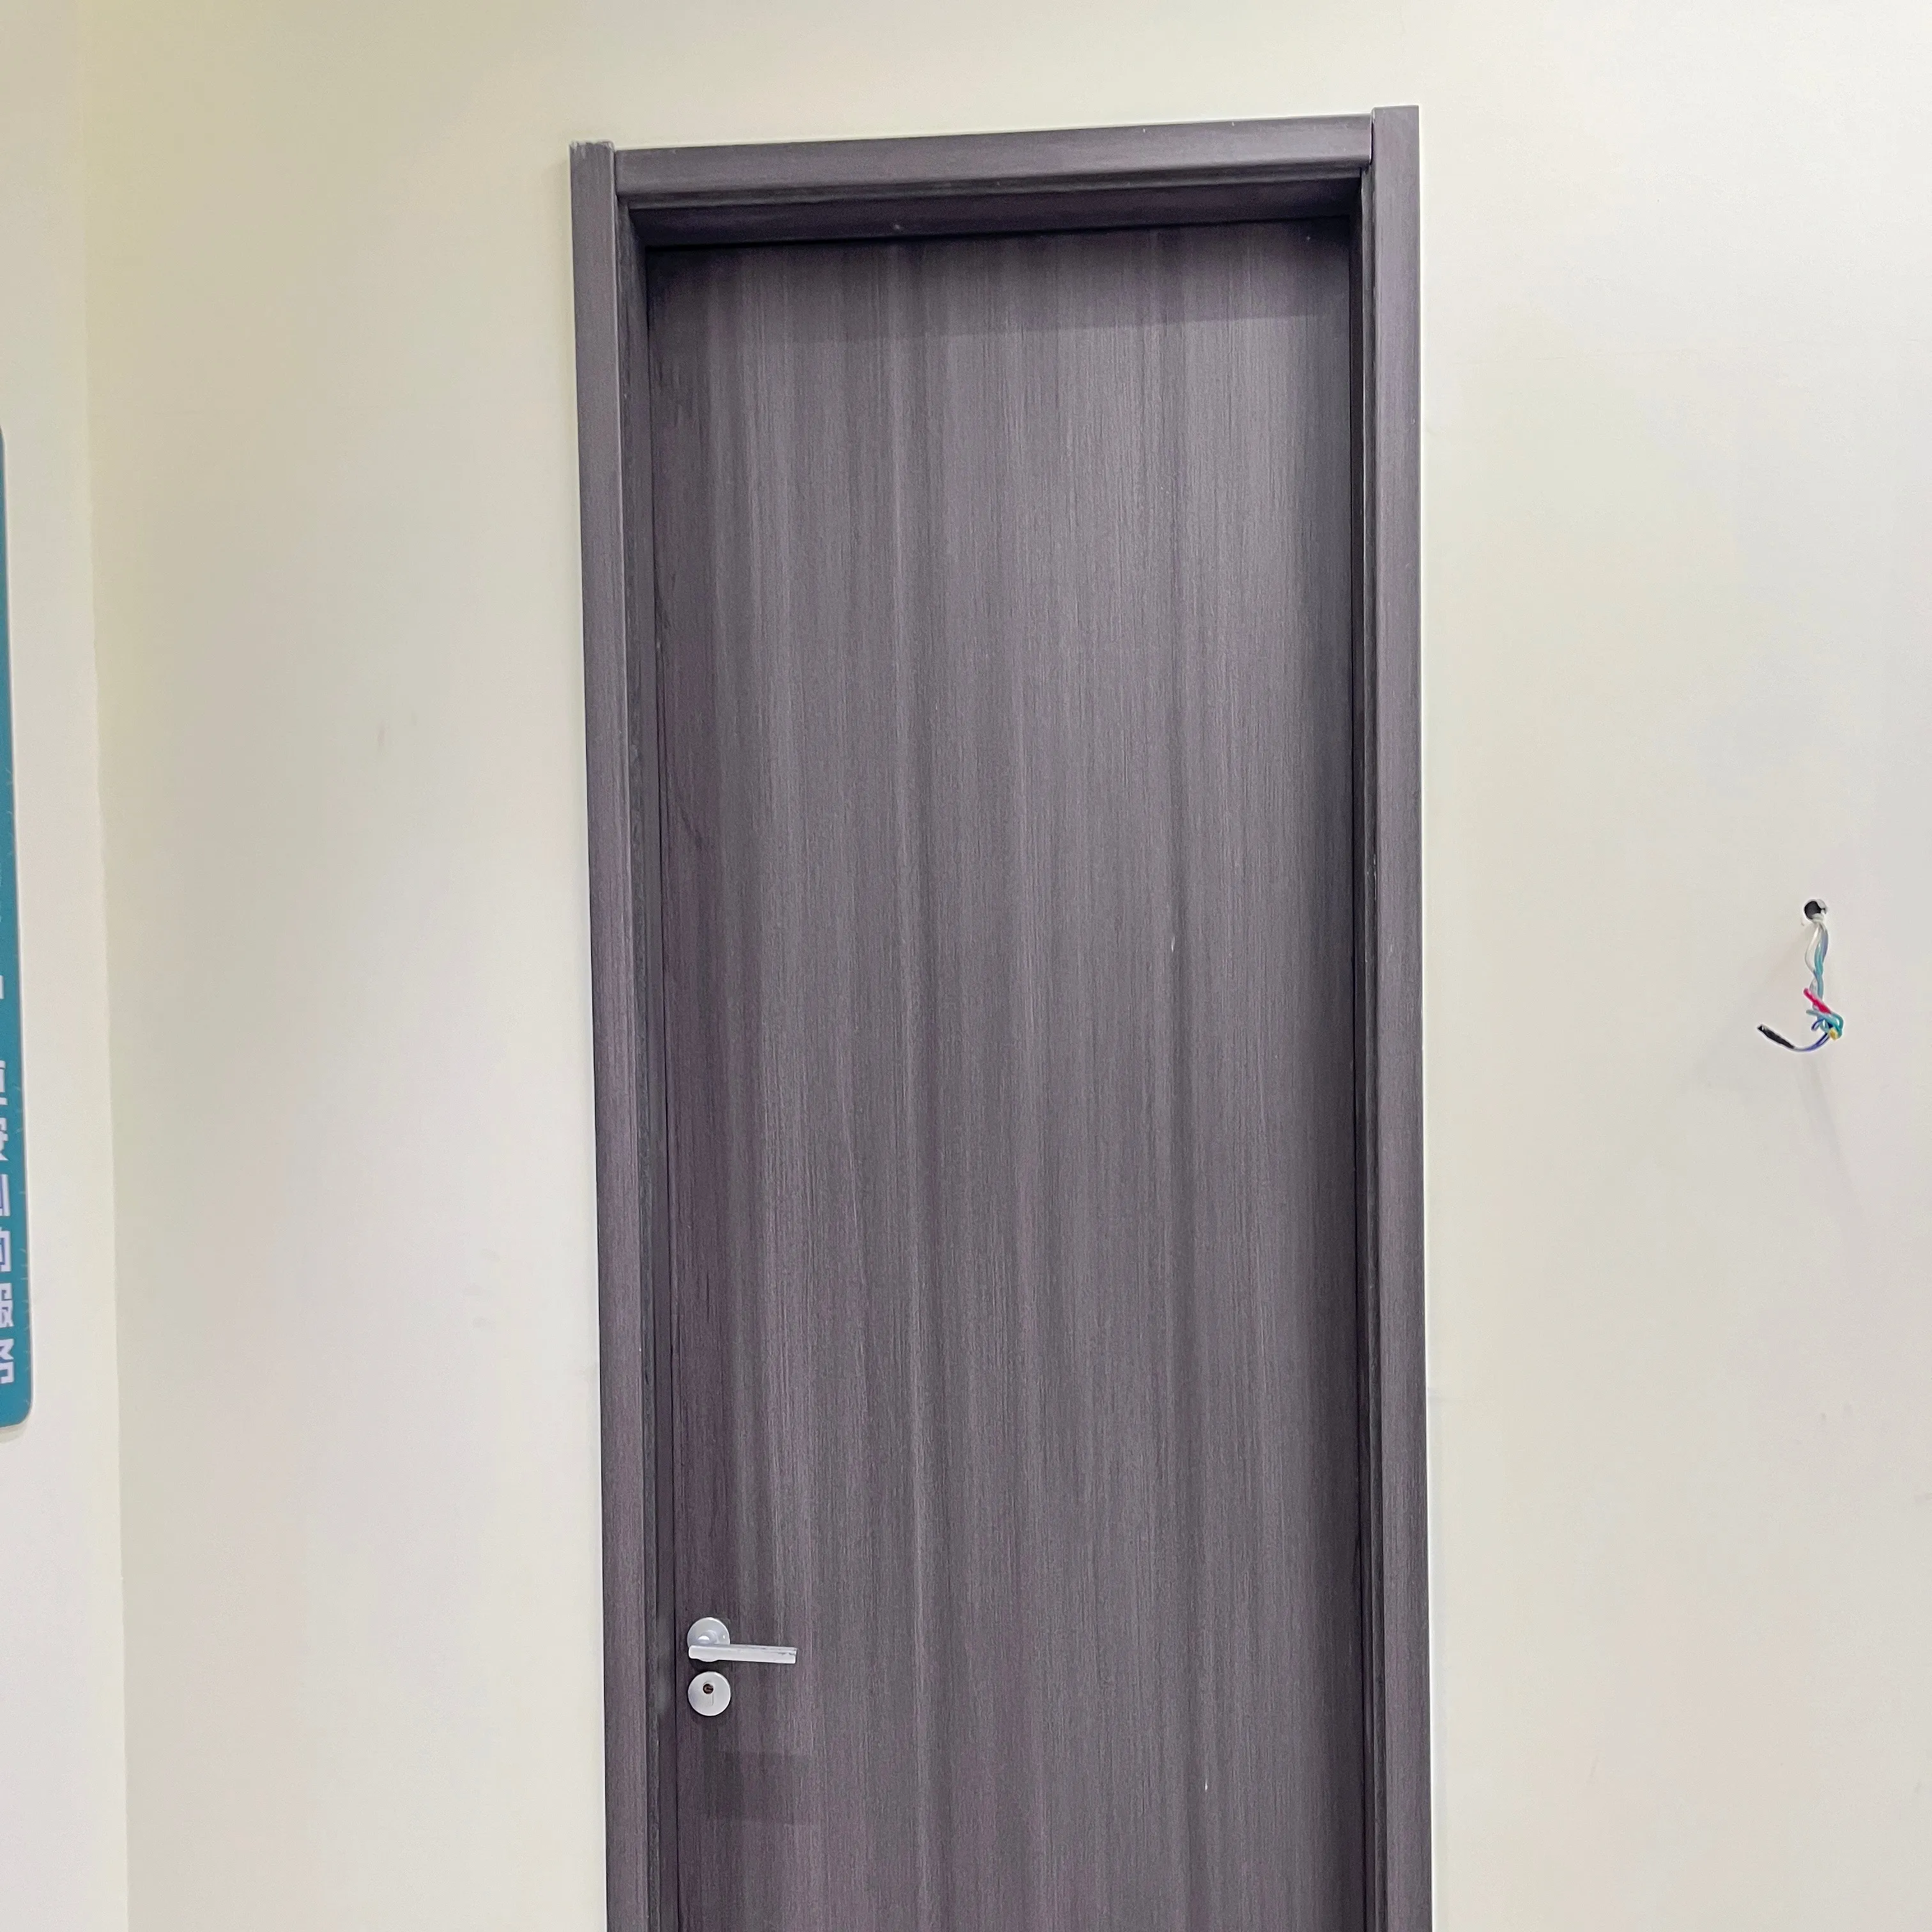 أبواب ونوافذ خشبية للأماكن المغلقة من أفضل المصنعين من Prima، تصميم إطار نافذة خشبي، باب داخلي أبيض أسترالي